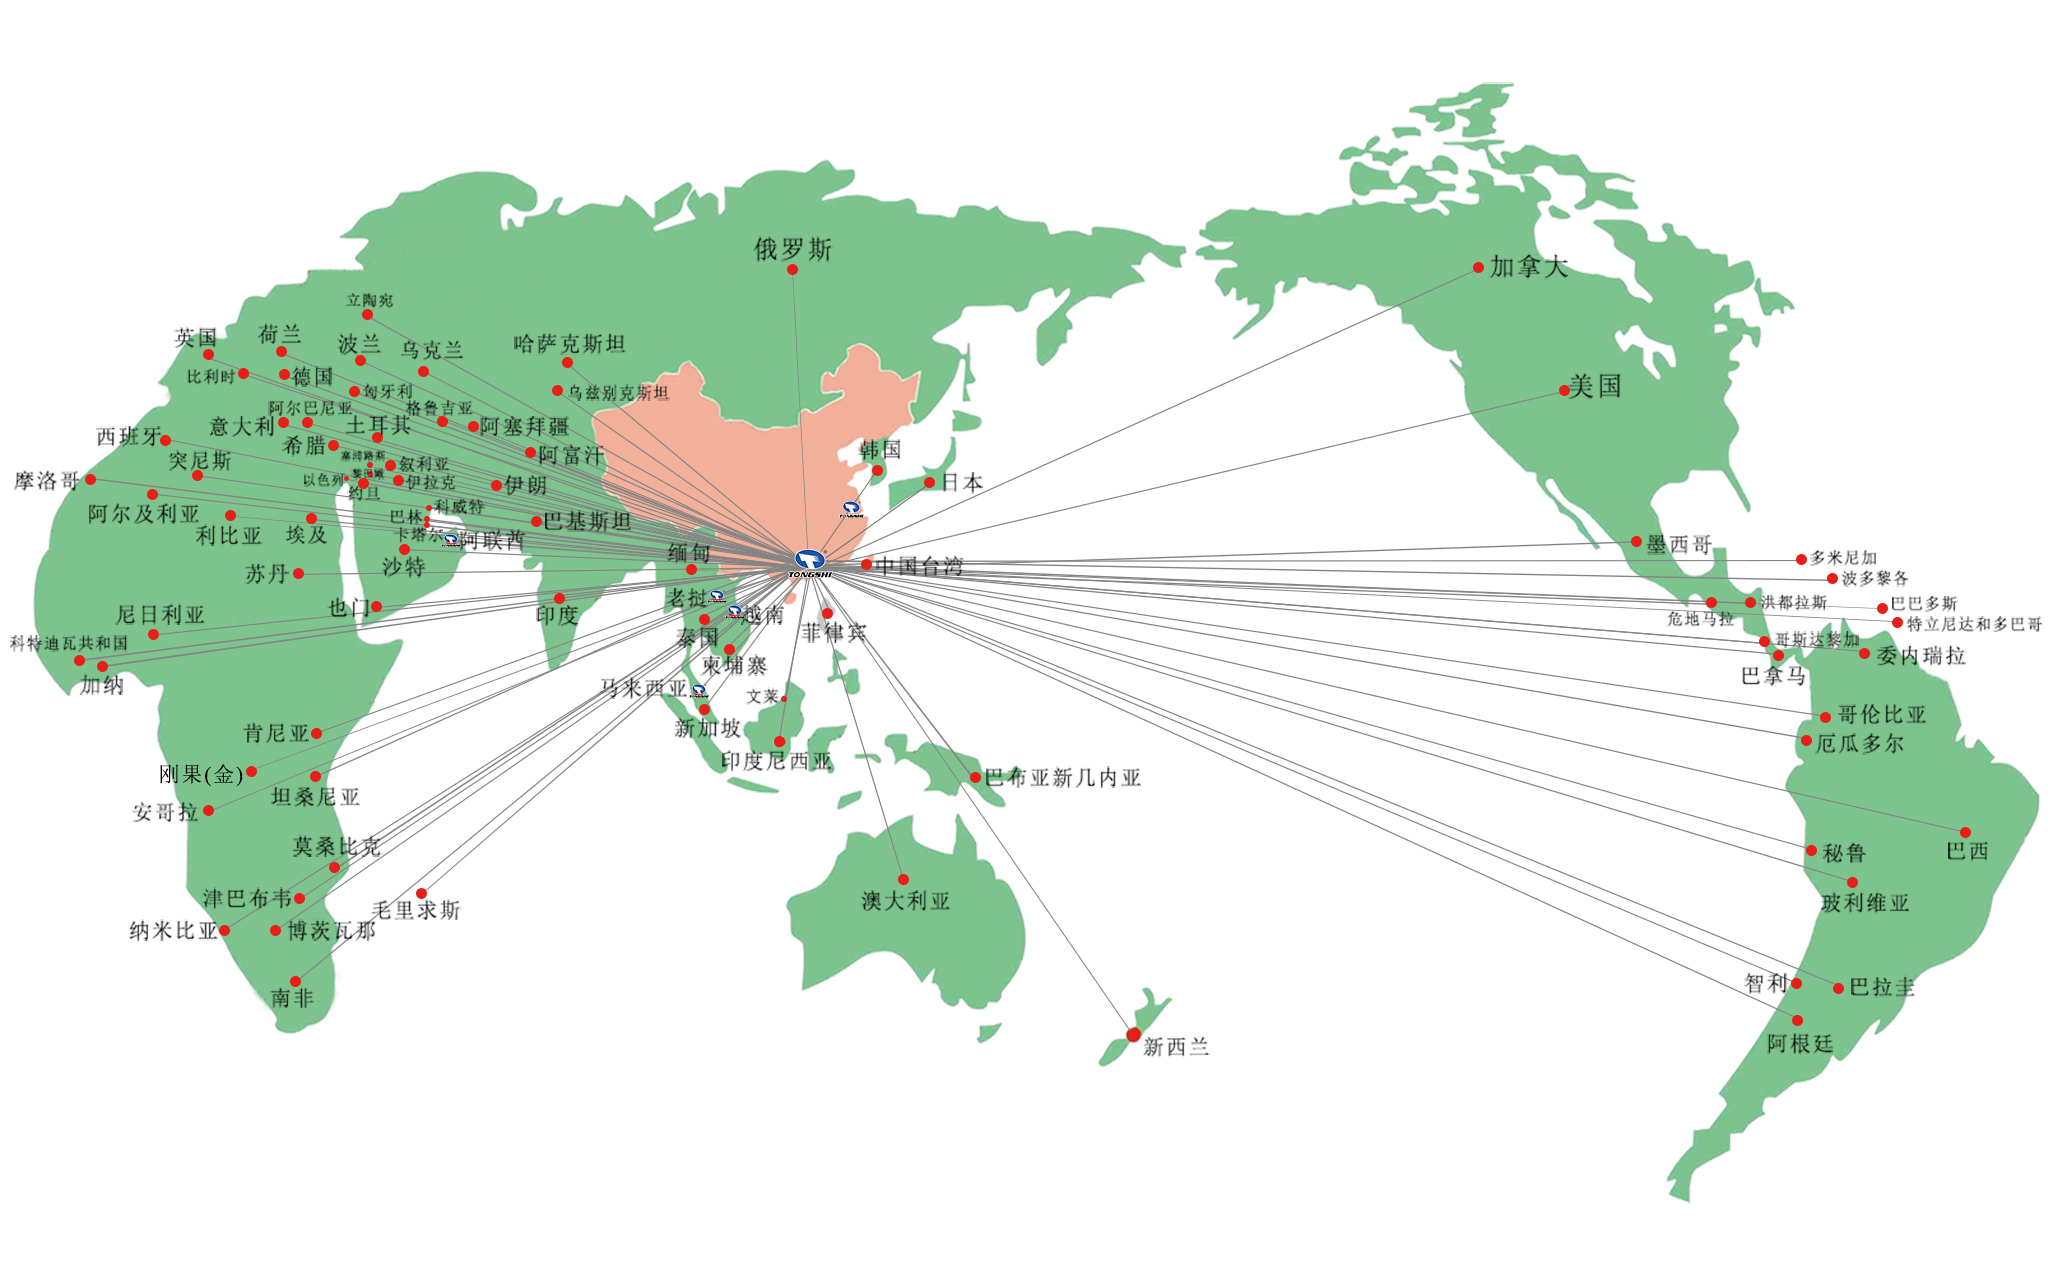 鑫统仕产品远销全球90多个国家